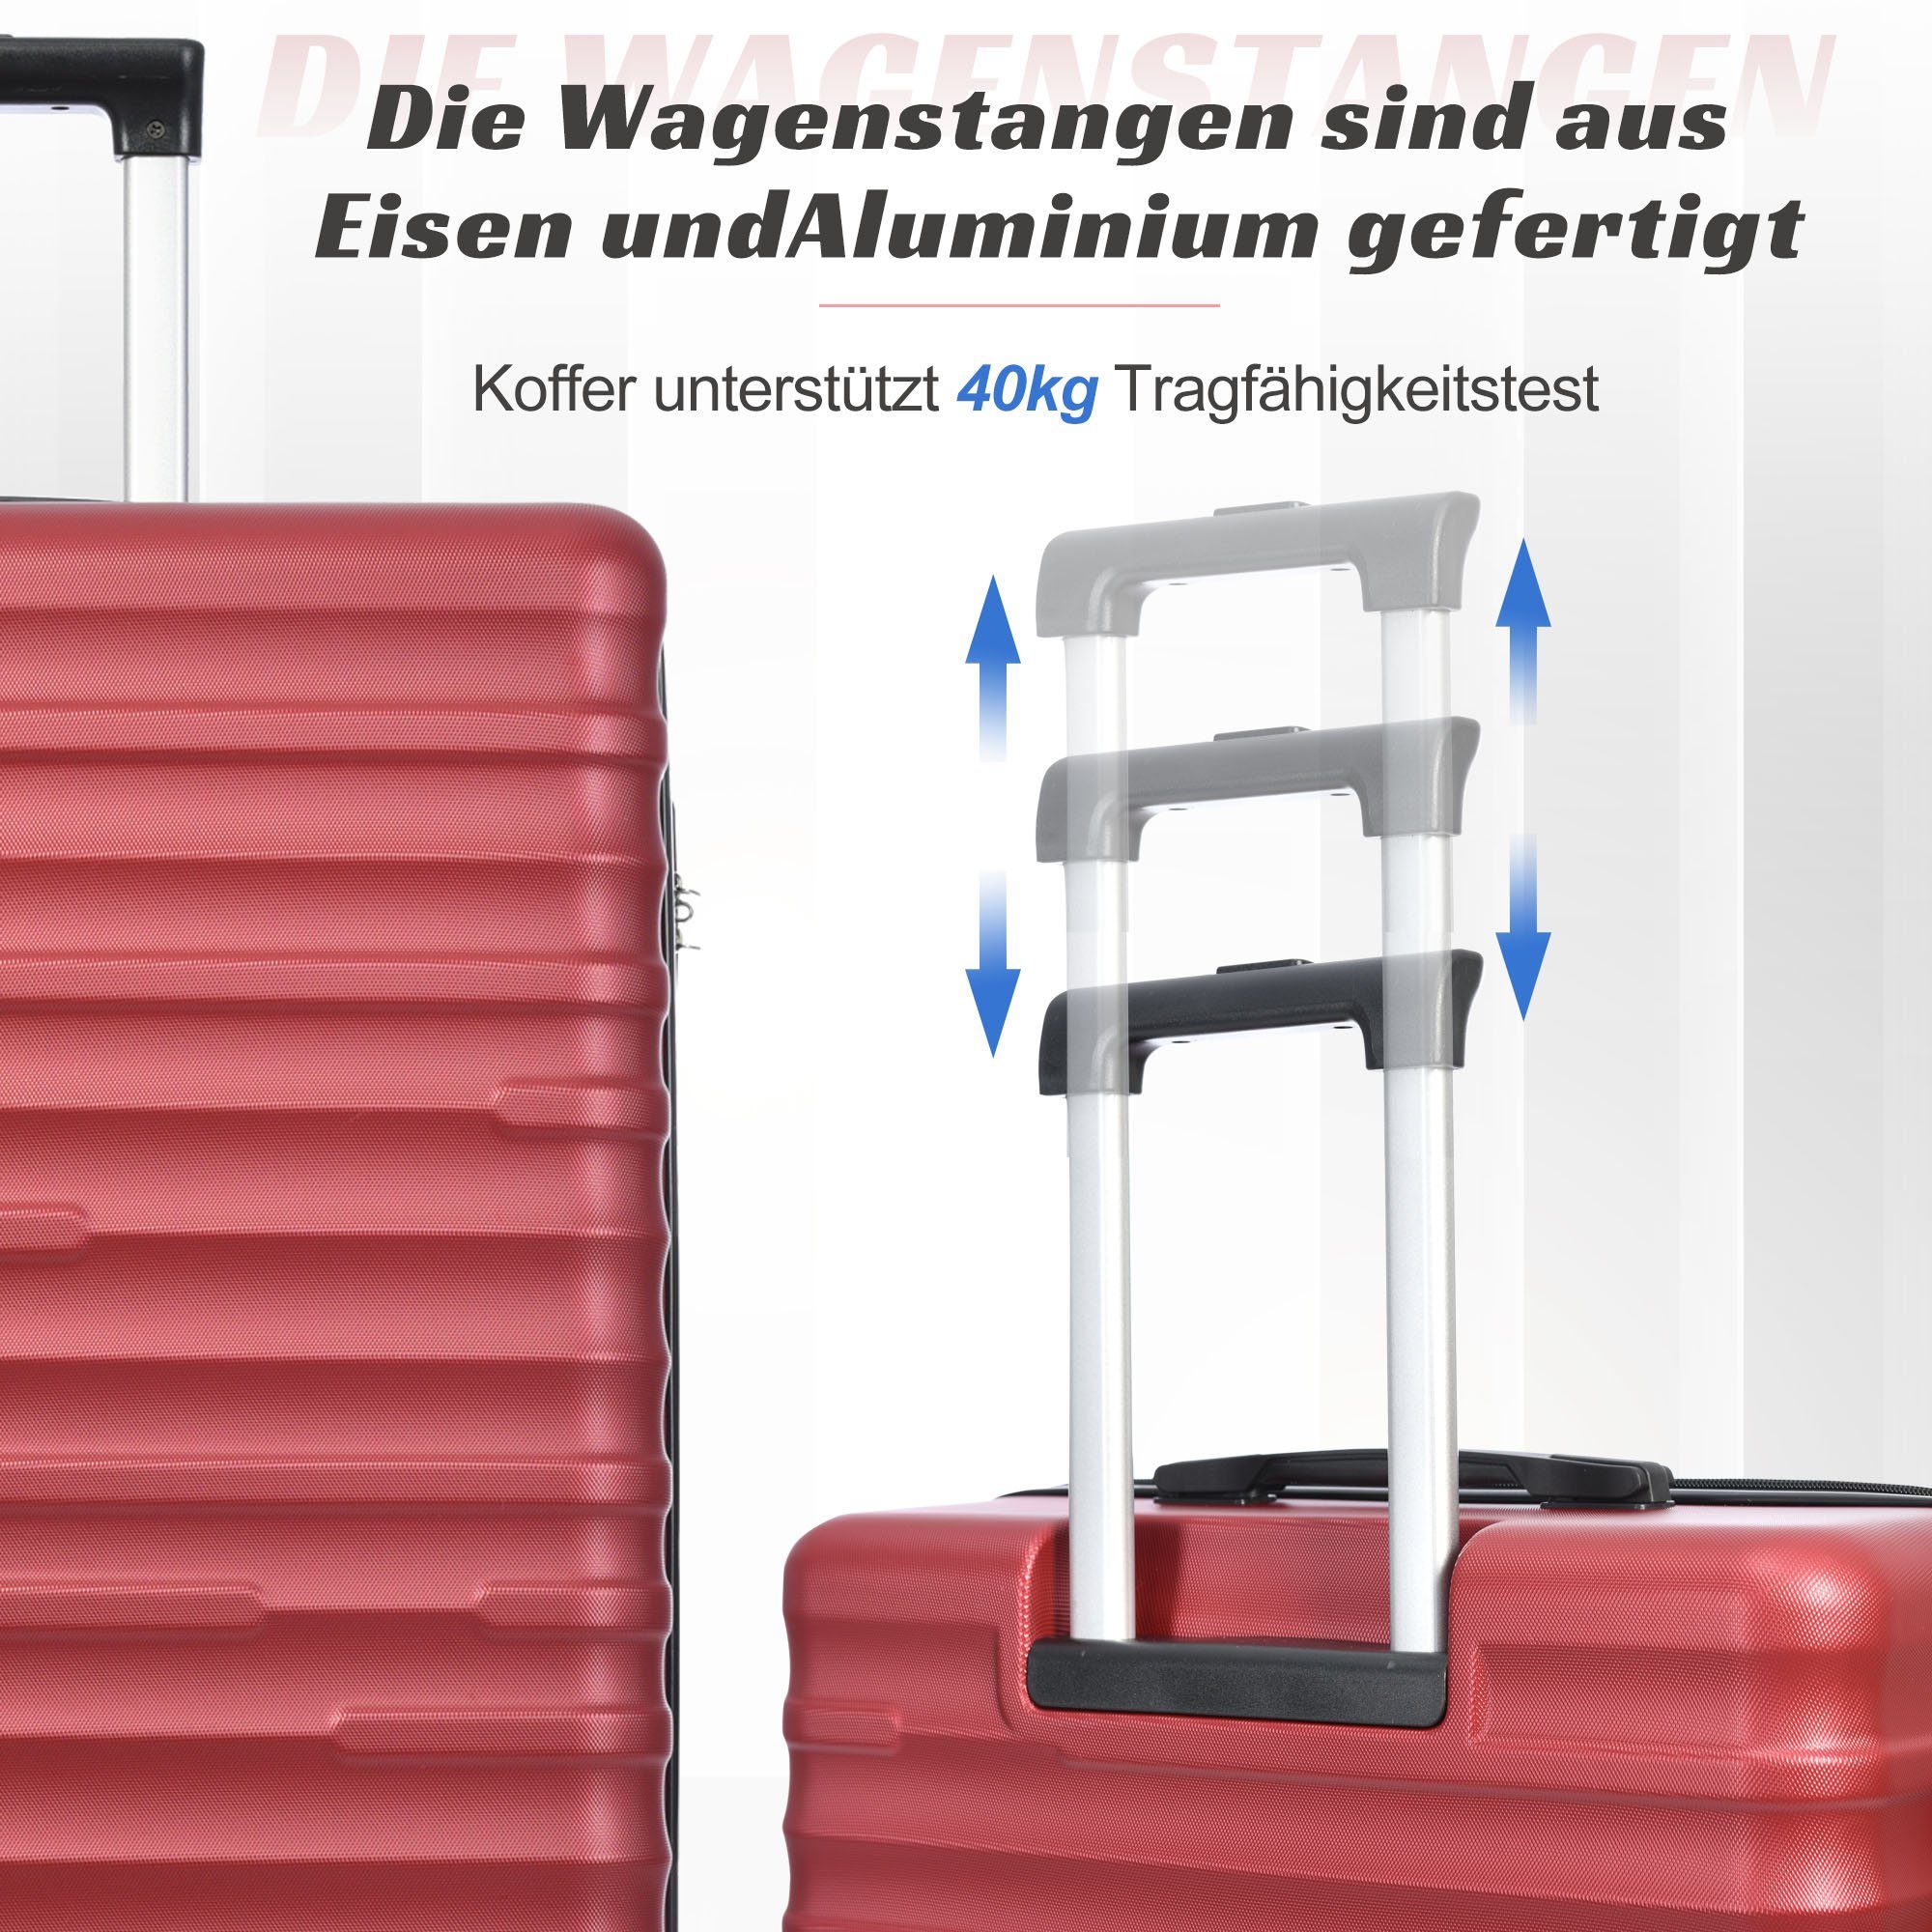 erweiterbare ABS-Gepäck, Handgepäckkoffer OKWISH Rot Räder, 4 Rollen 4 Hochwertiges TSA-Schloss, Kapazität,